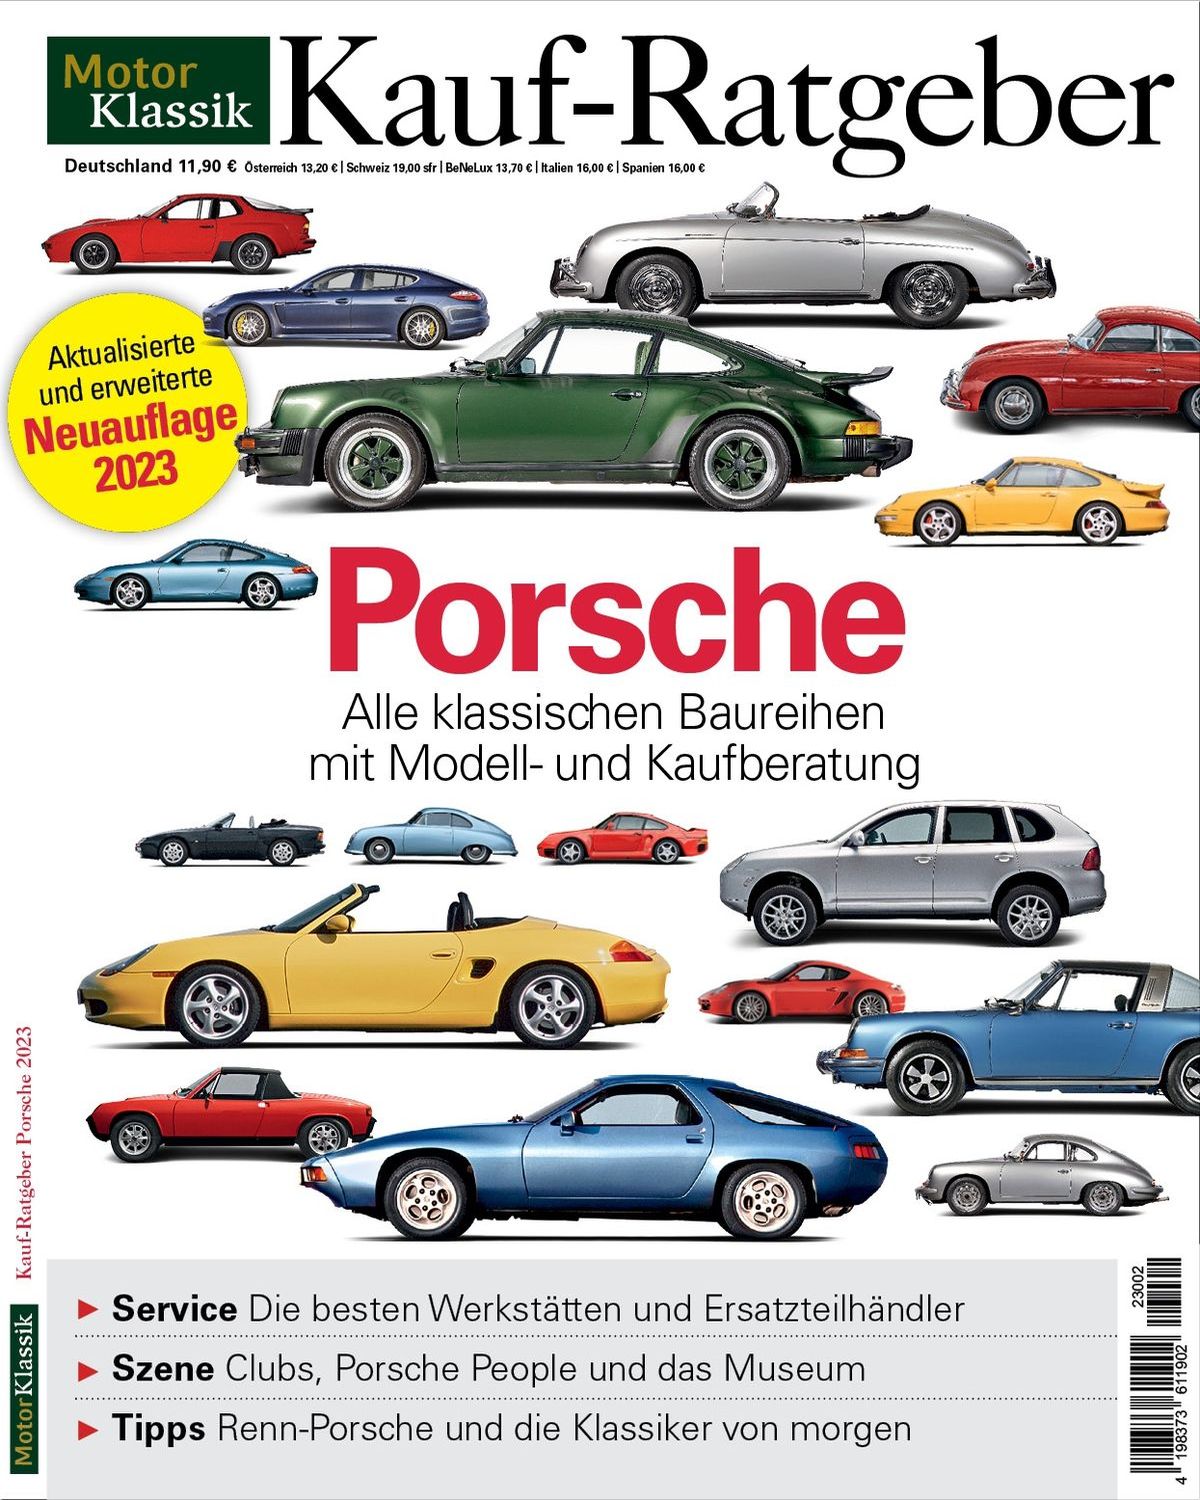 Foto: So kaufen Sie einen Porsche-Klassiker.